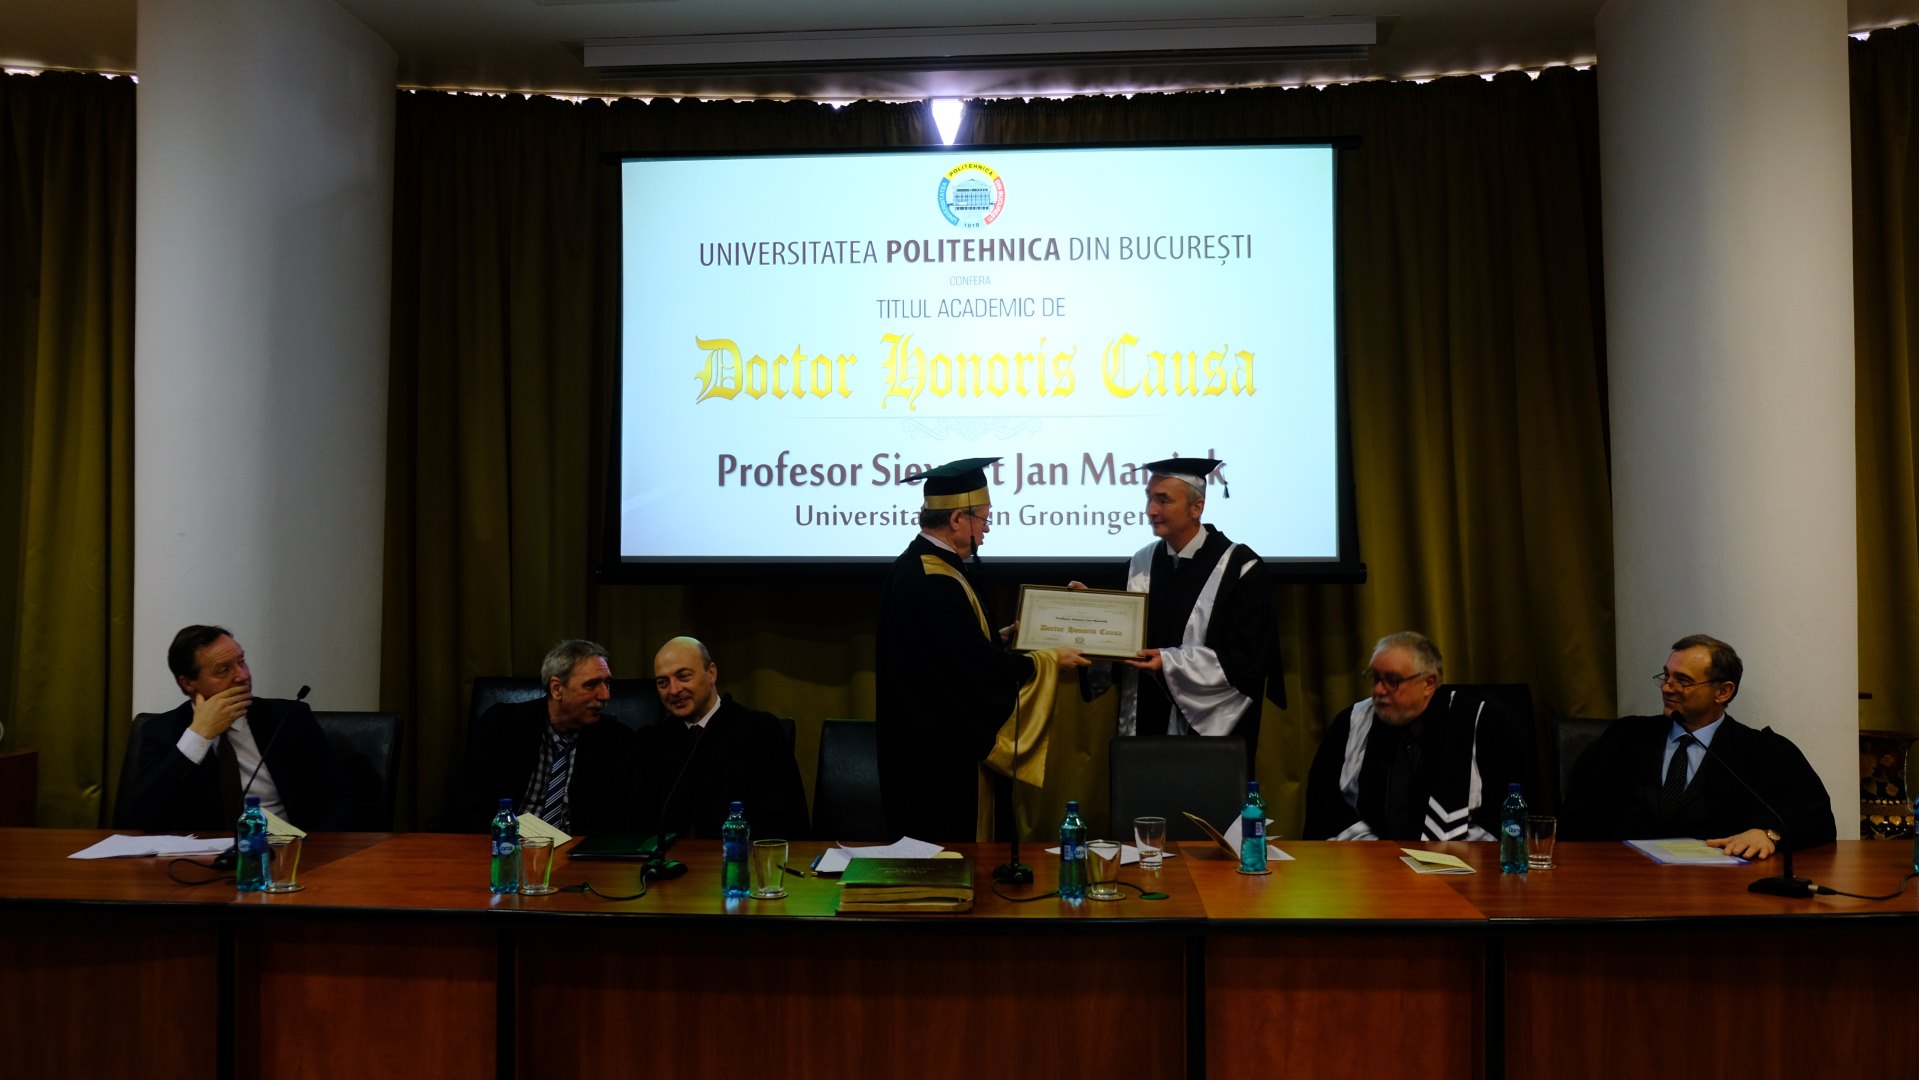 uitreiking eredoctoraat Professor Siewert Jan Marrinkaward ceremony academic title of Doctor Honoris Causa to Professor Siewert Jan Marrink